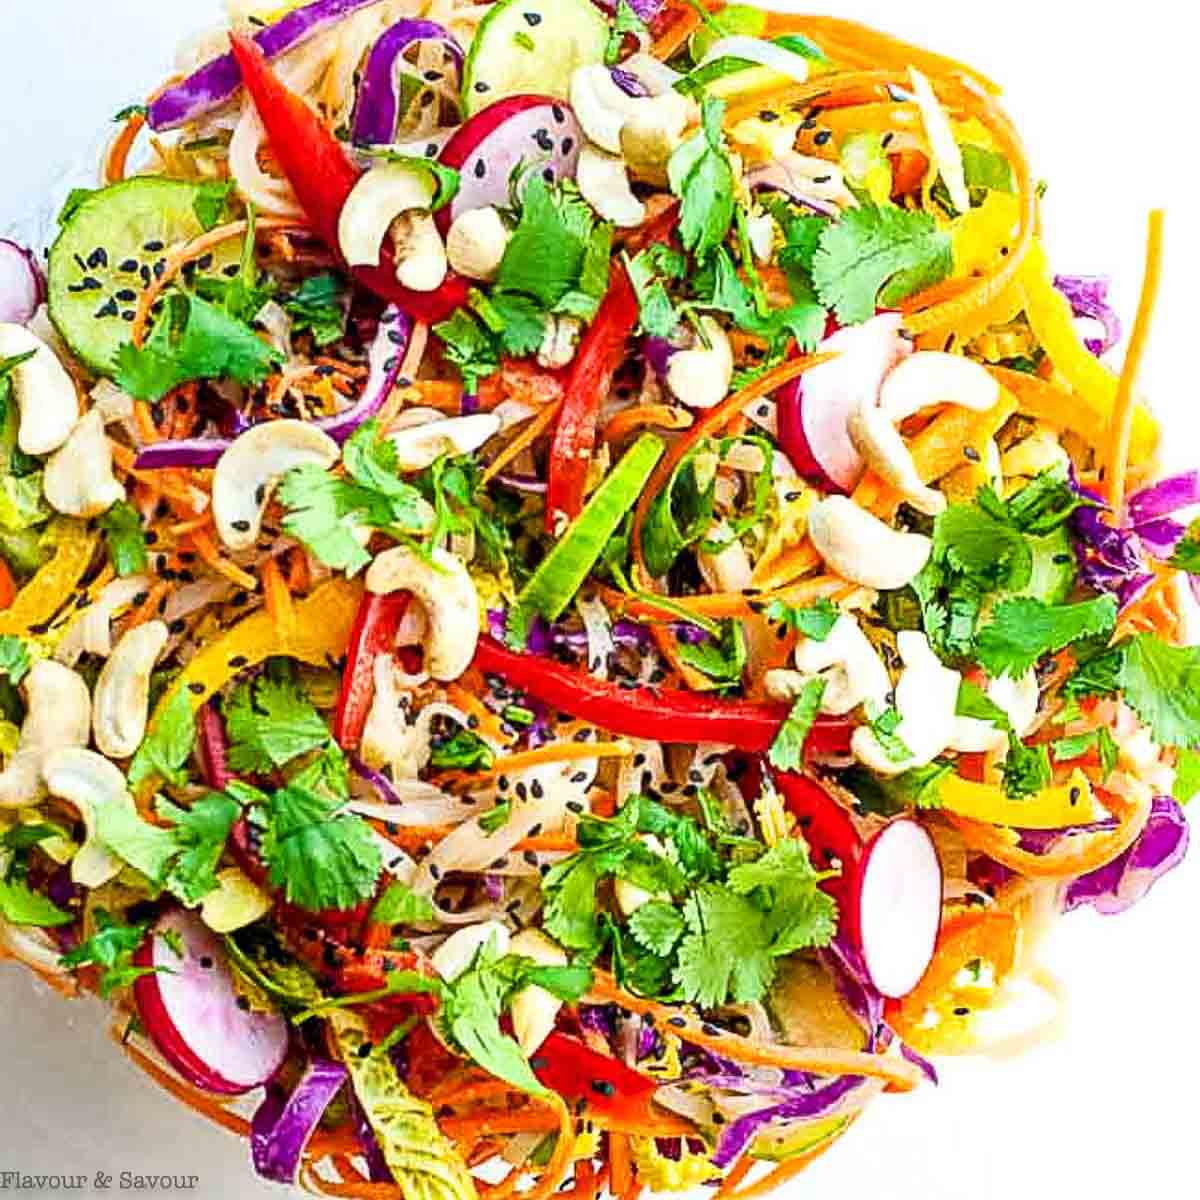 https://www.flavourandsavour.com/wp-content/uploads/2019/04/Crunchy-Thai-Noodle-Salad-square.jpg